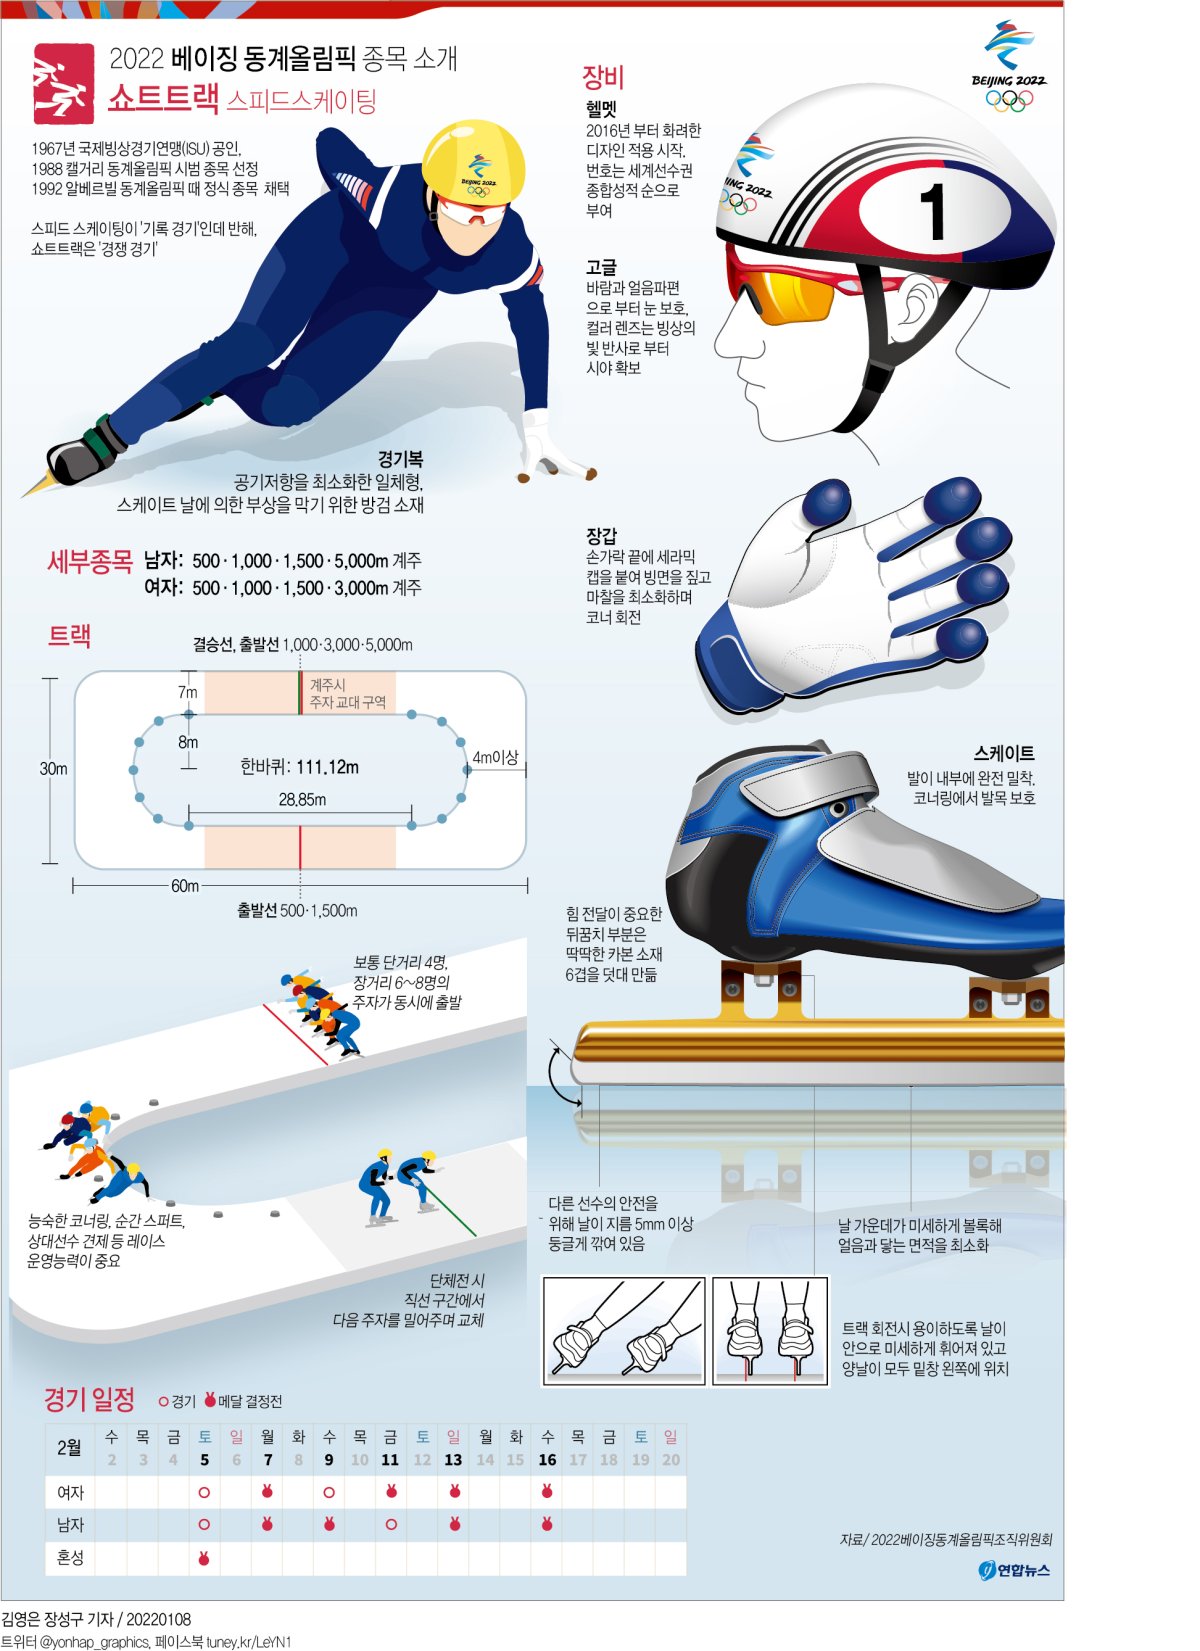 [그래픽] 베이징 동계올림픽 종목 소개 - 쇼트트랙